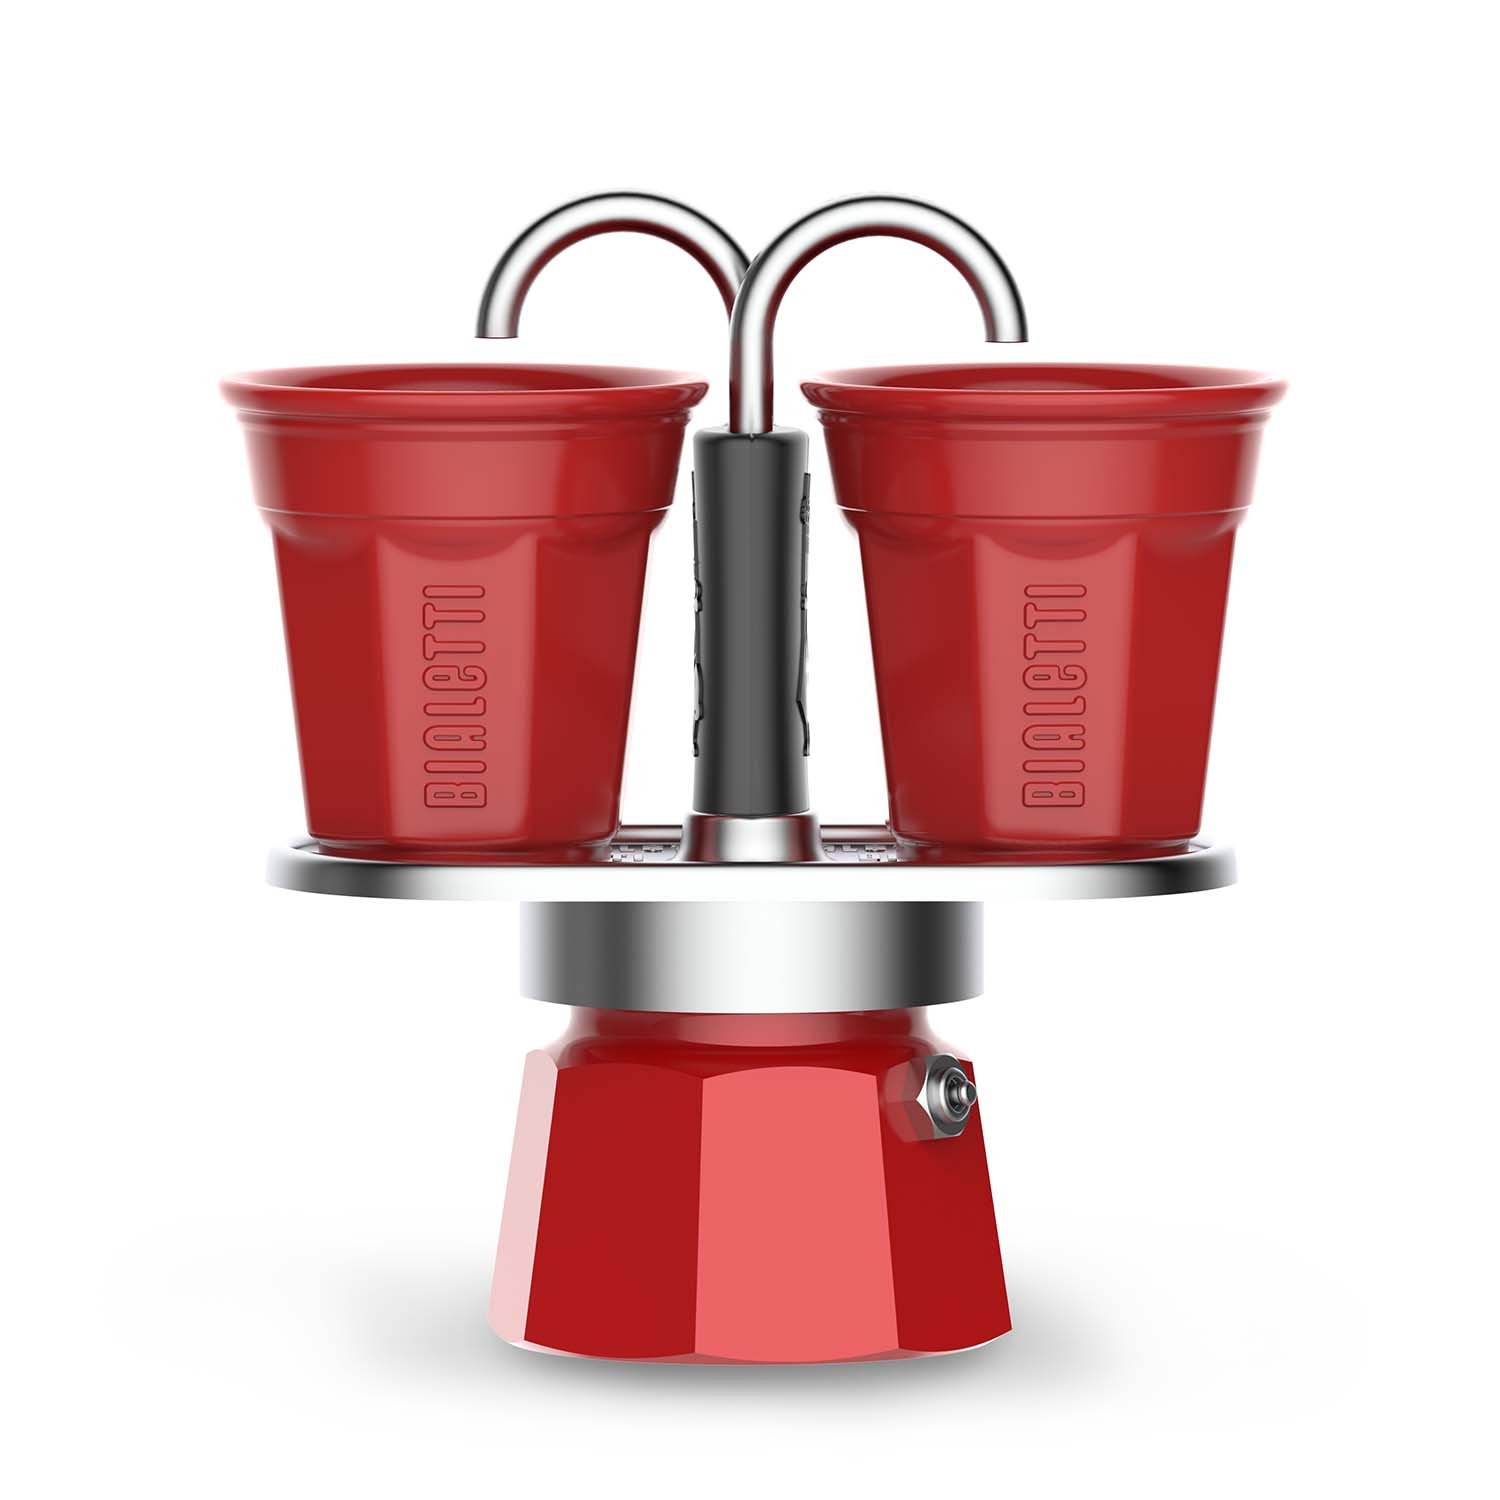 Bialetti Moka Express 2-Cup Mini Stovetop Espresso Maker | Sur La Table